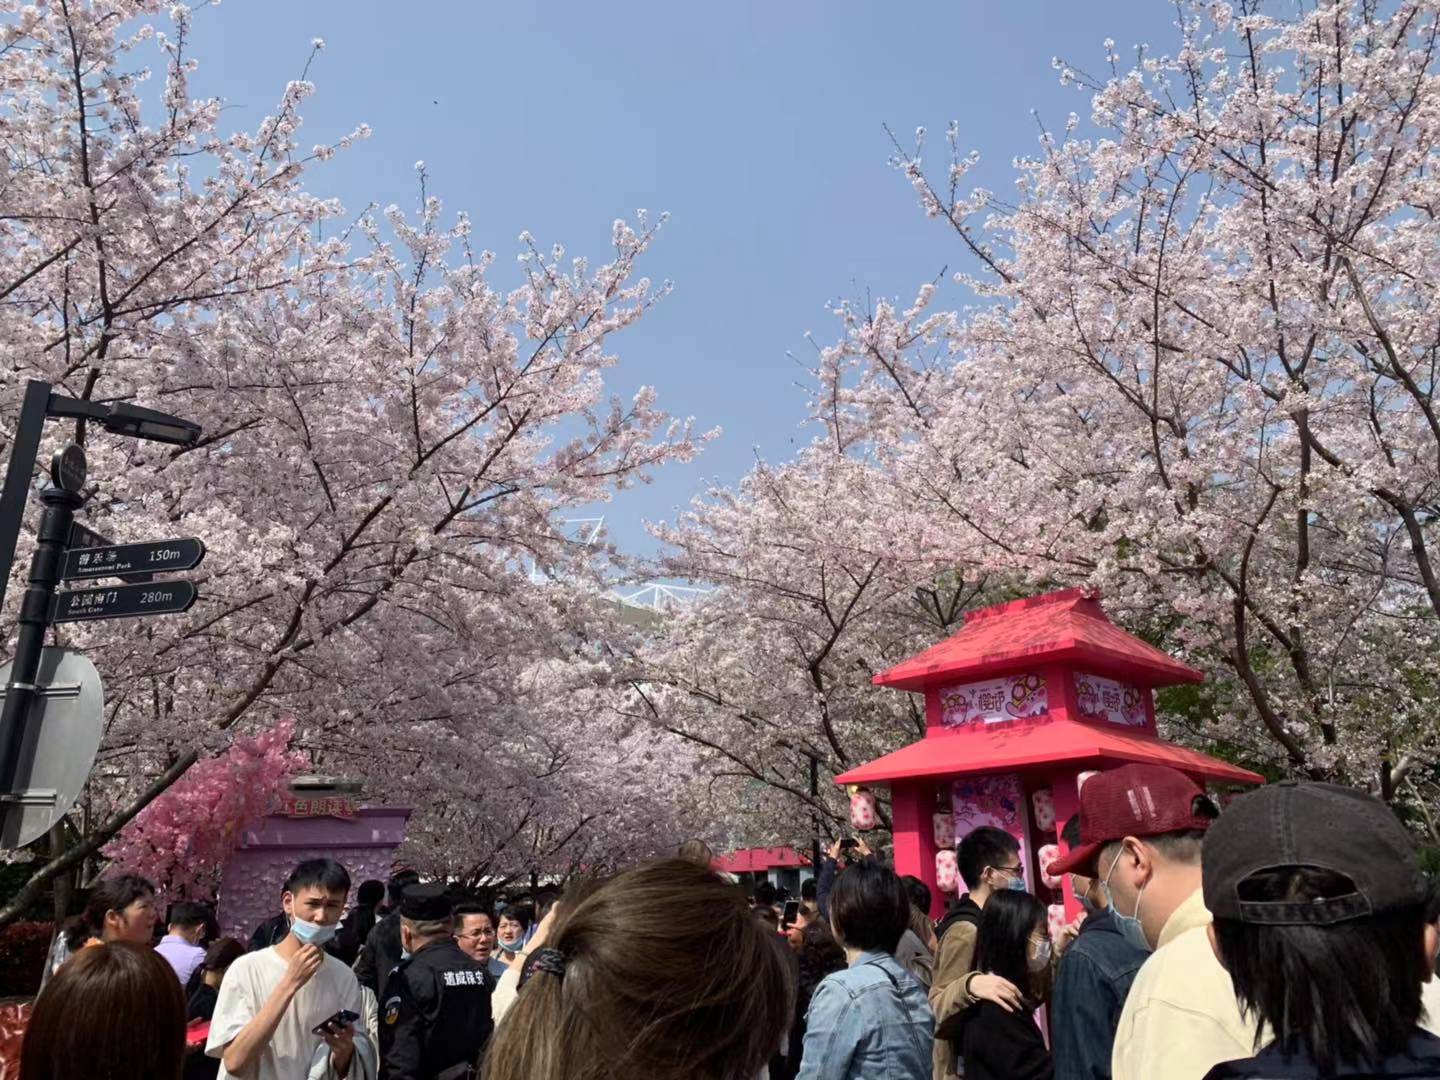 鲁迅公园首届樱花节开幕,1984年中日青年在此栽下樱花树